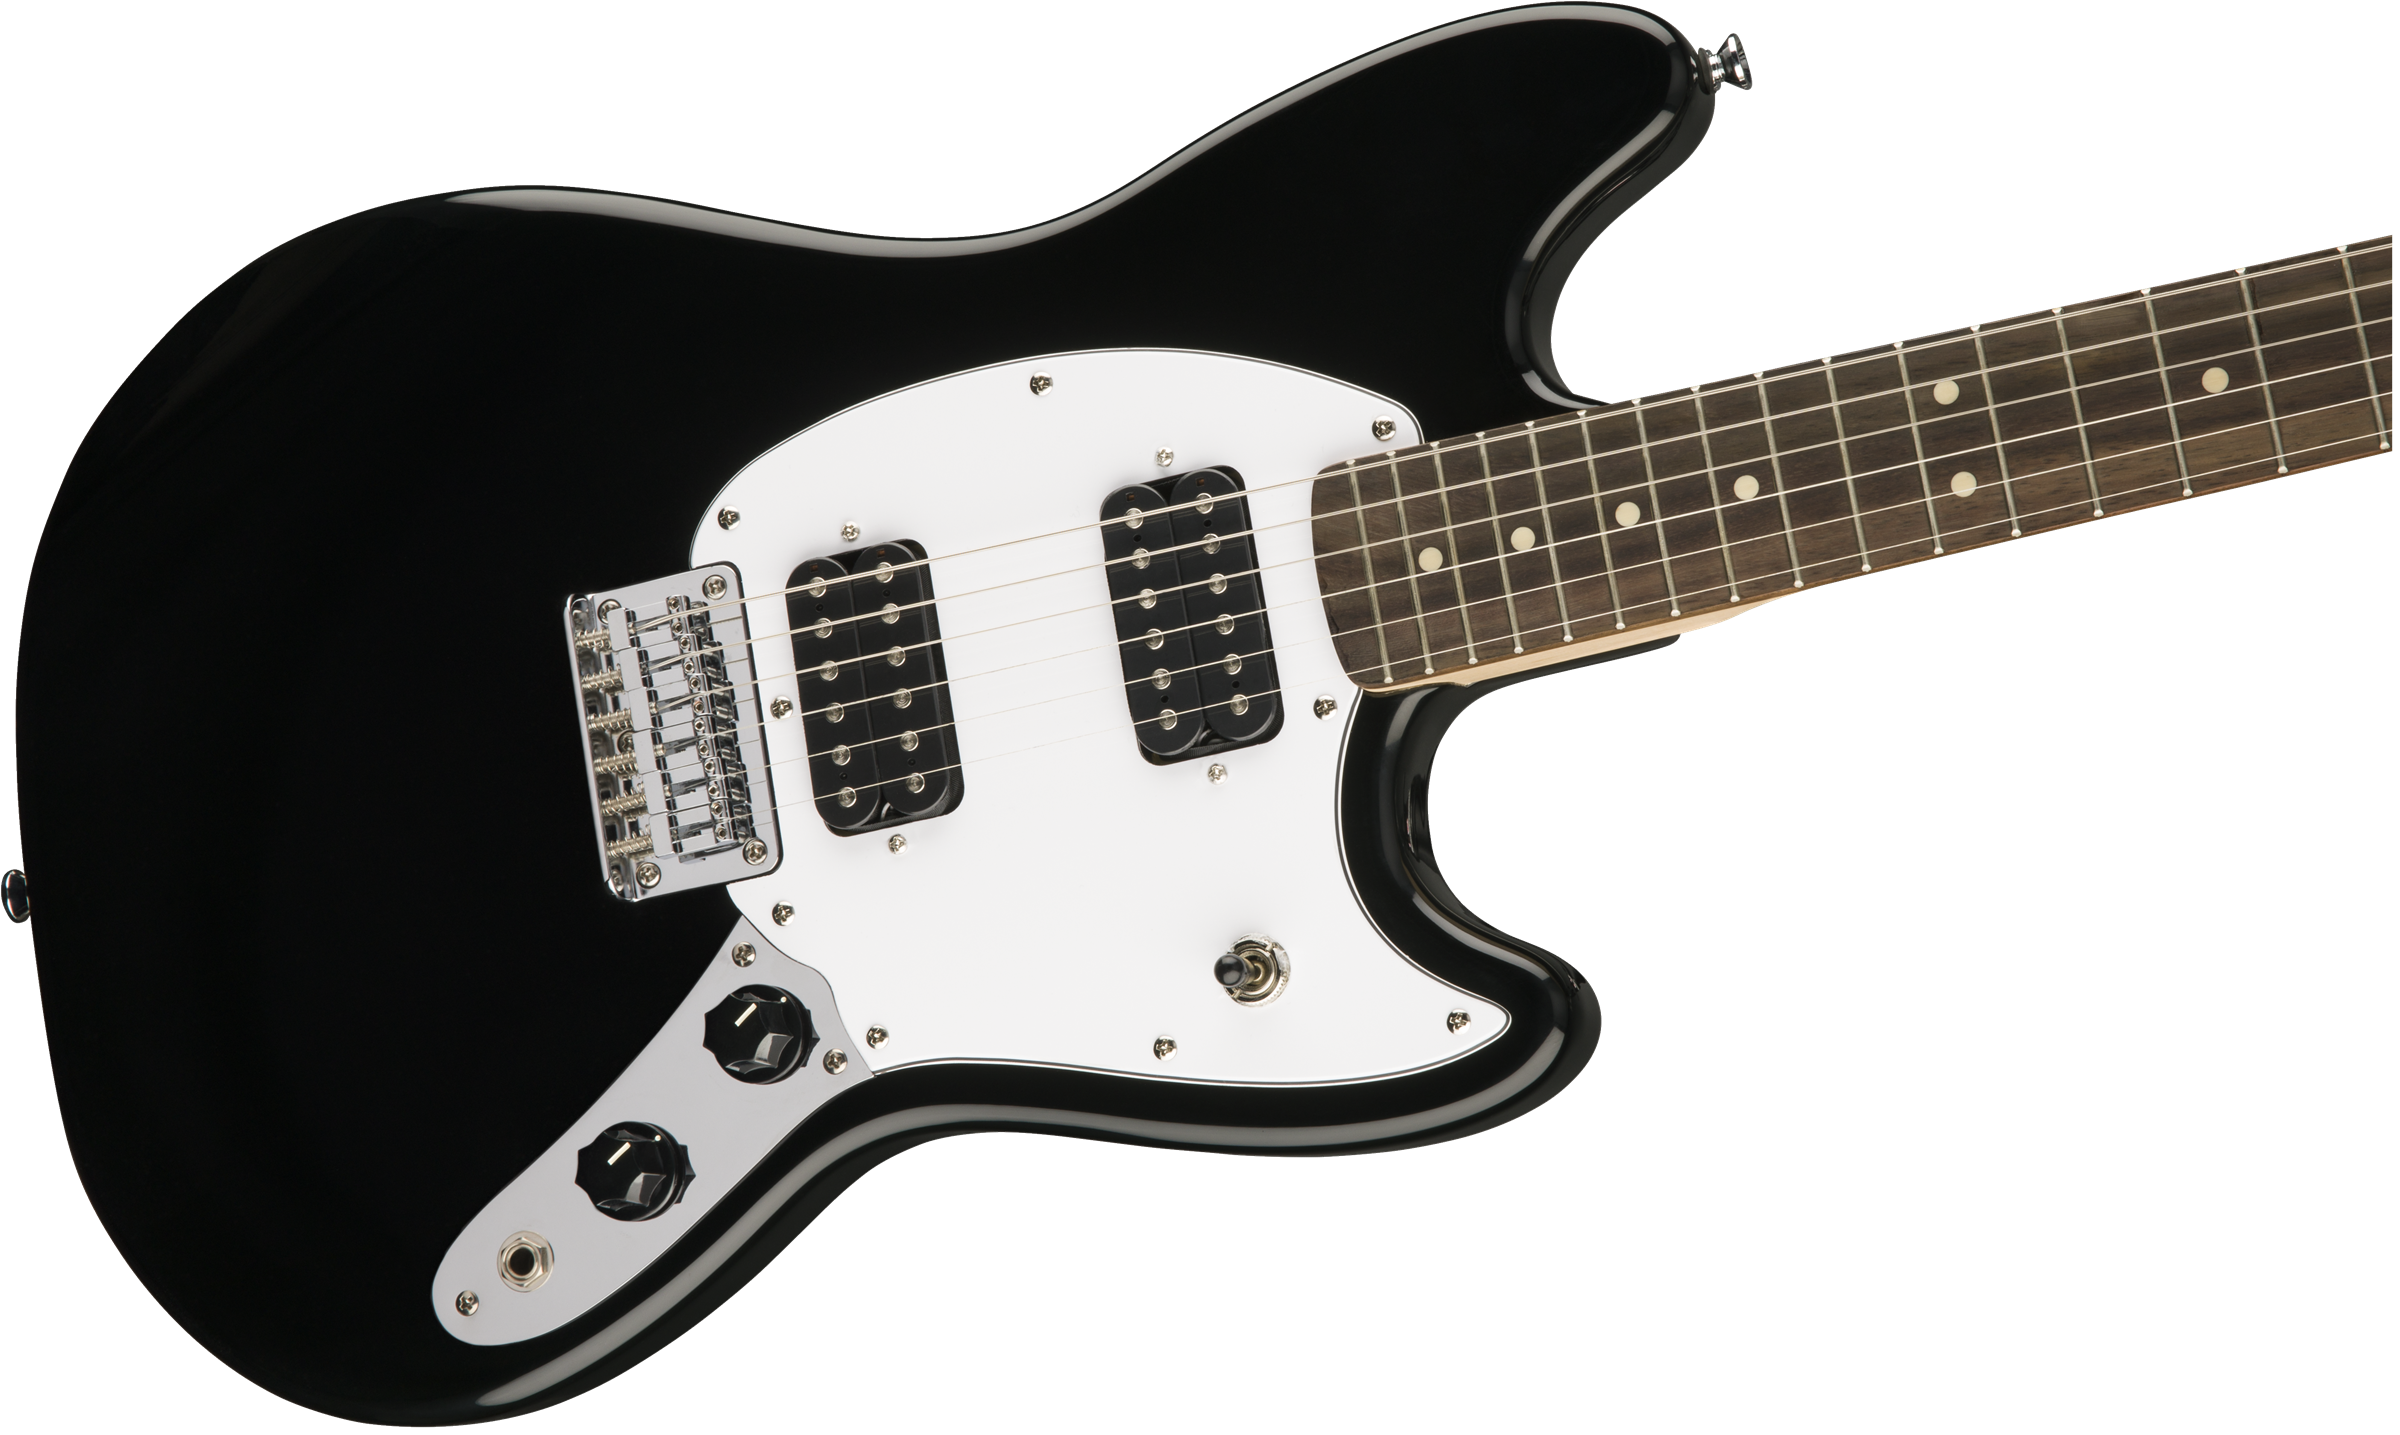 Squier Mustang Bullet Hh 2019 Ht Lau - Black - Guitarra electrica retro rock - Variation 3